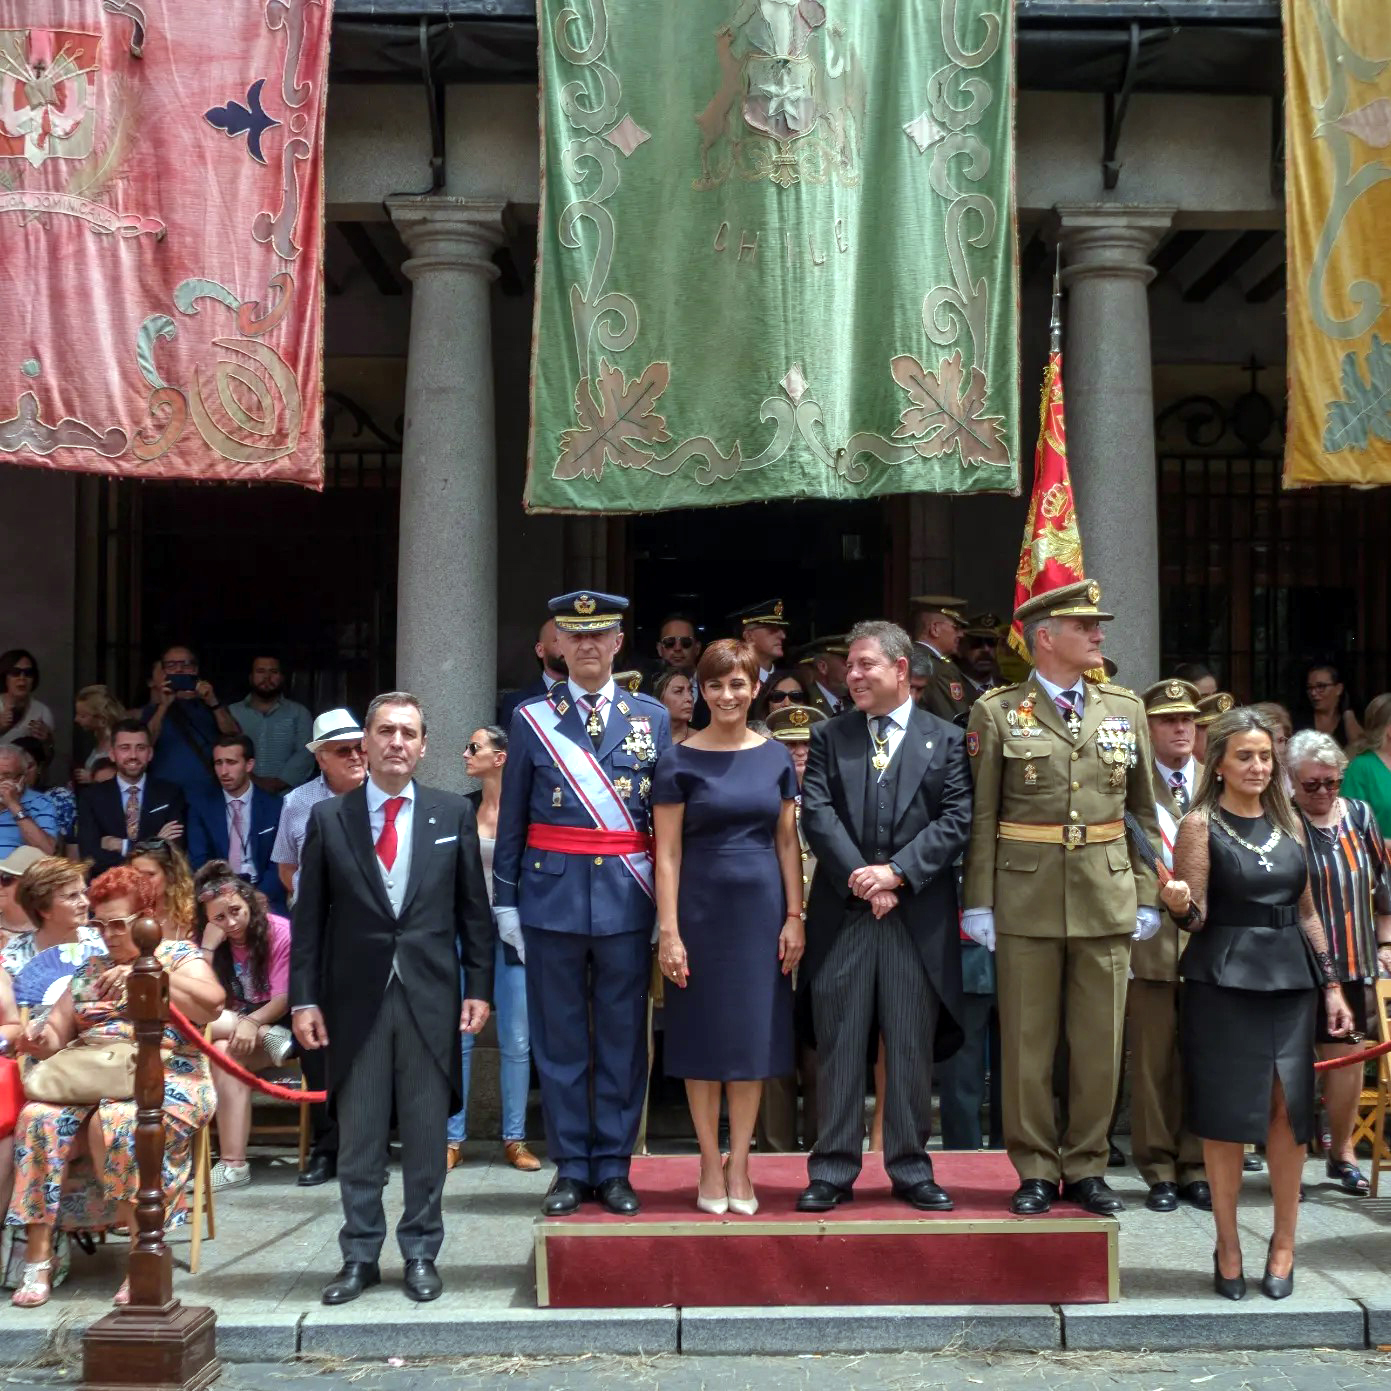 Isabel Rodríguez asiste a la procesión del Corpus Christi de Toledo

